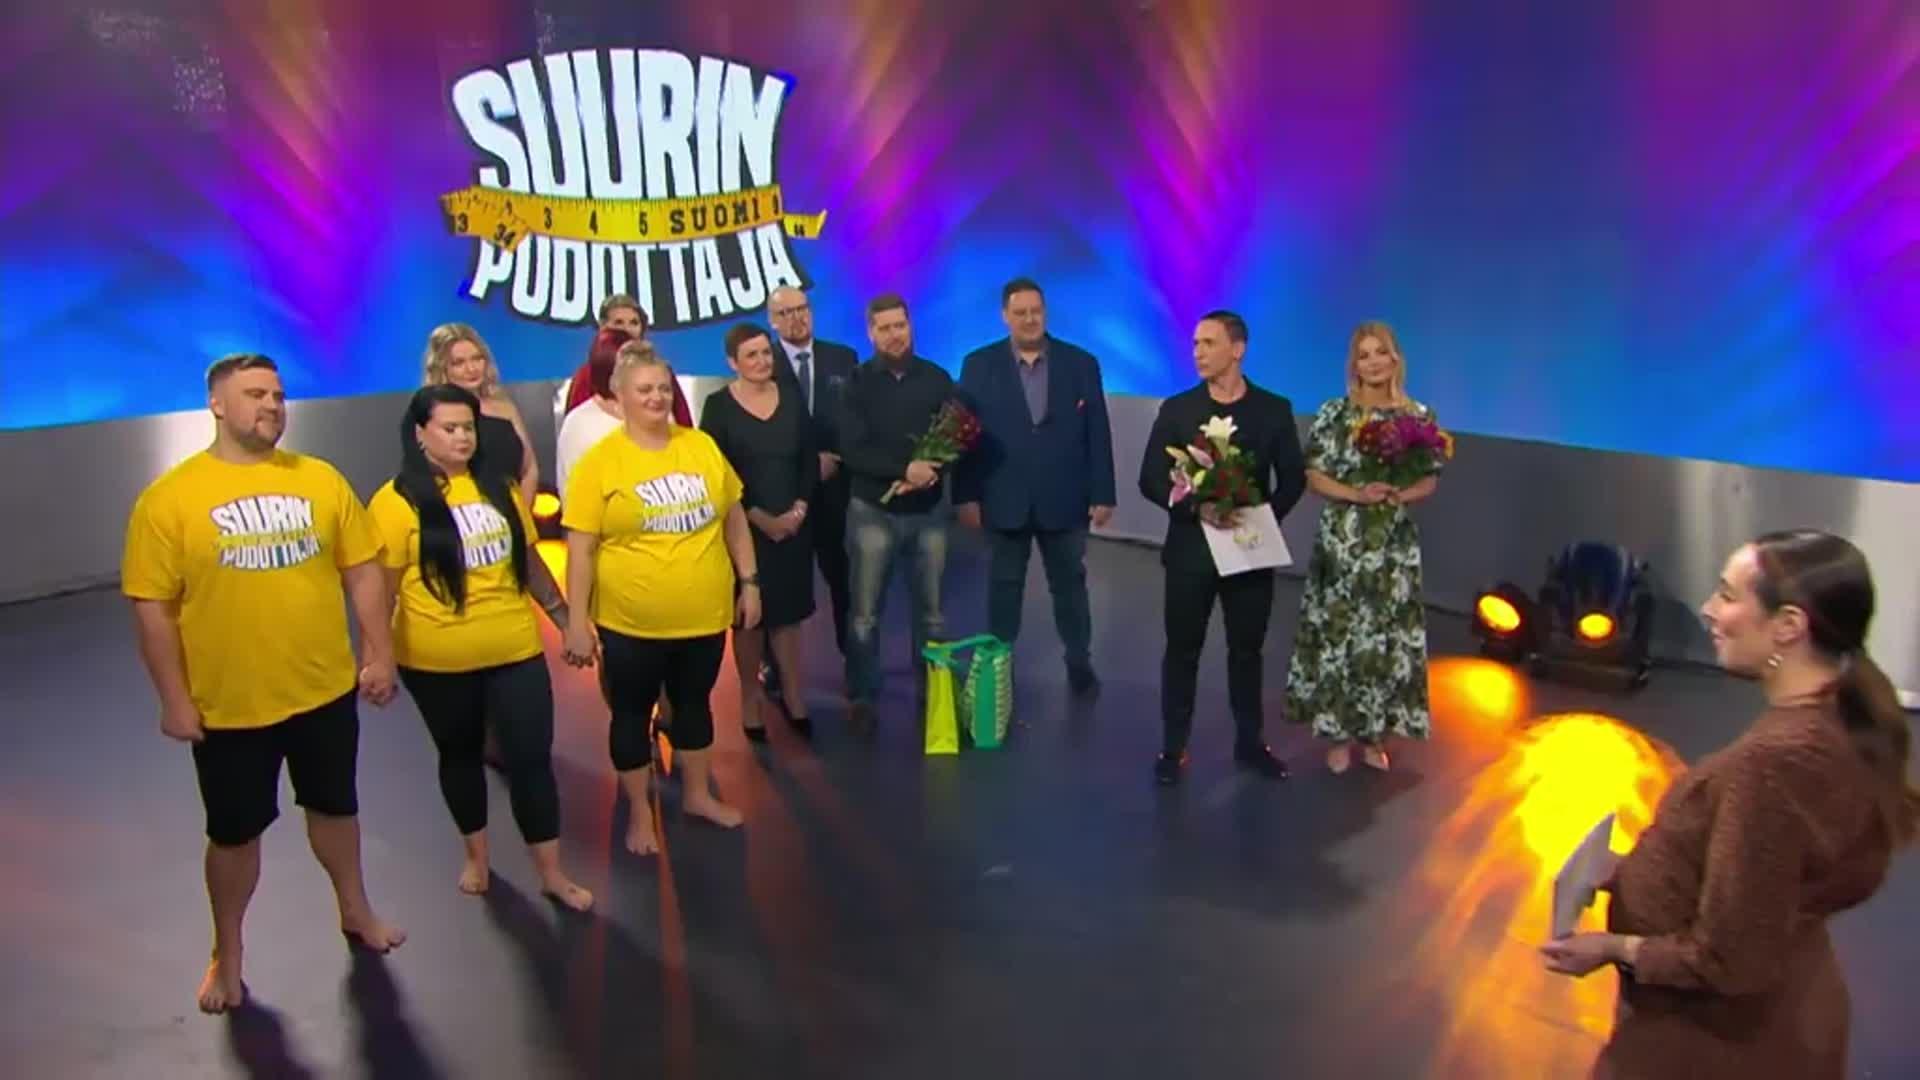 Suvi on Suurin pudottaja Suomi -voittaja 2022! 